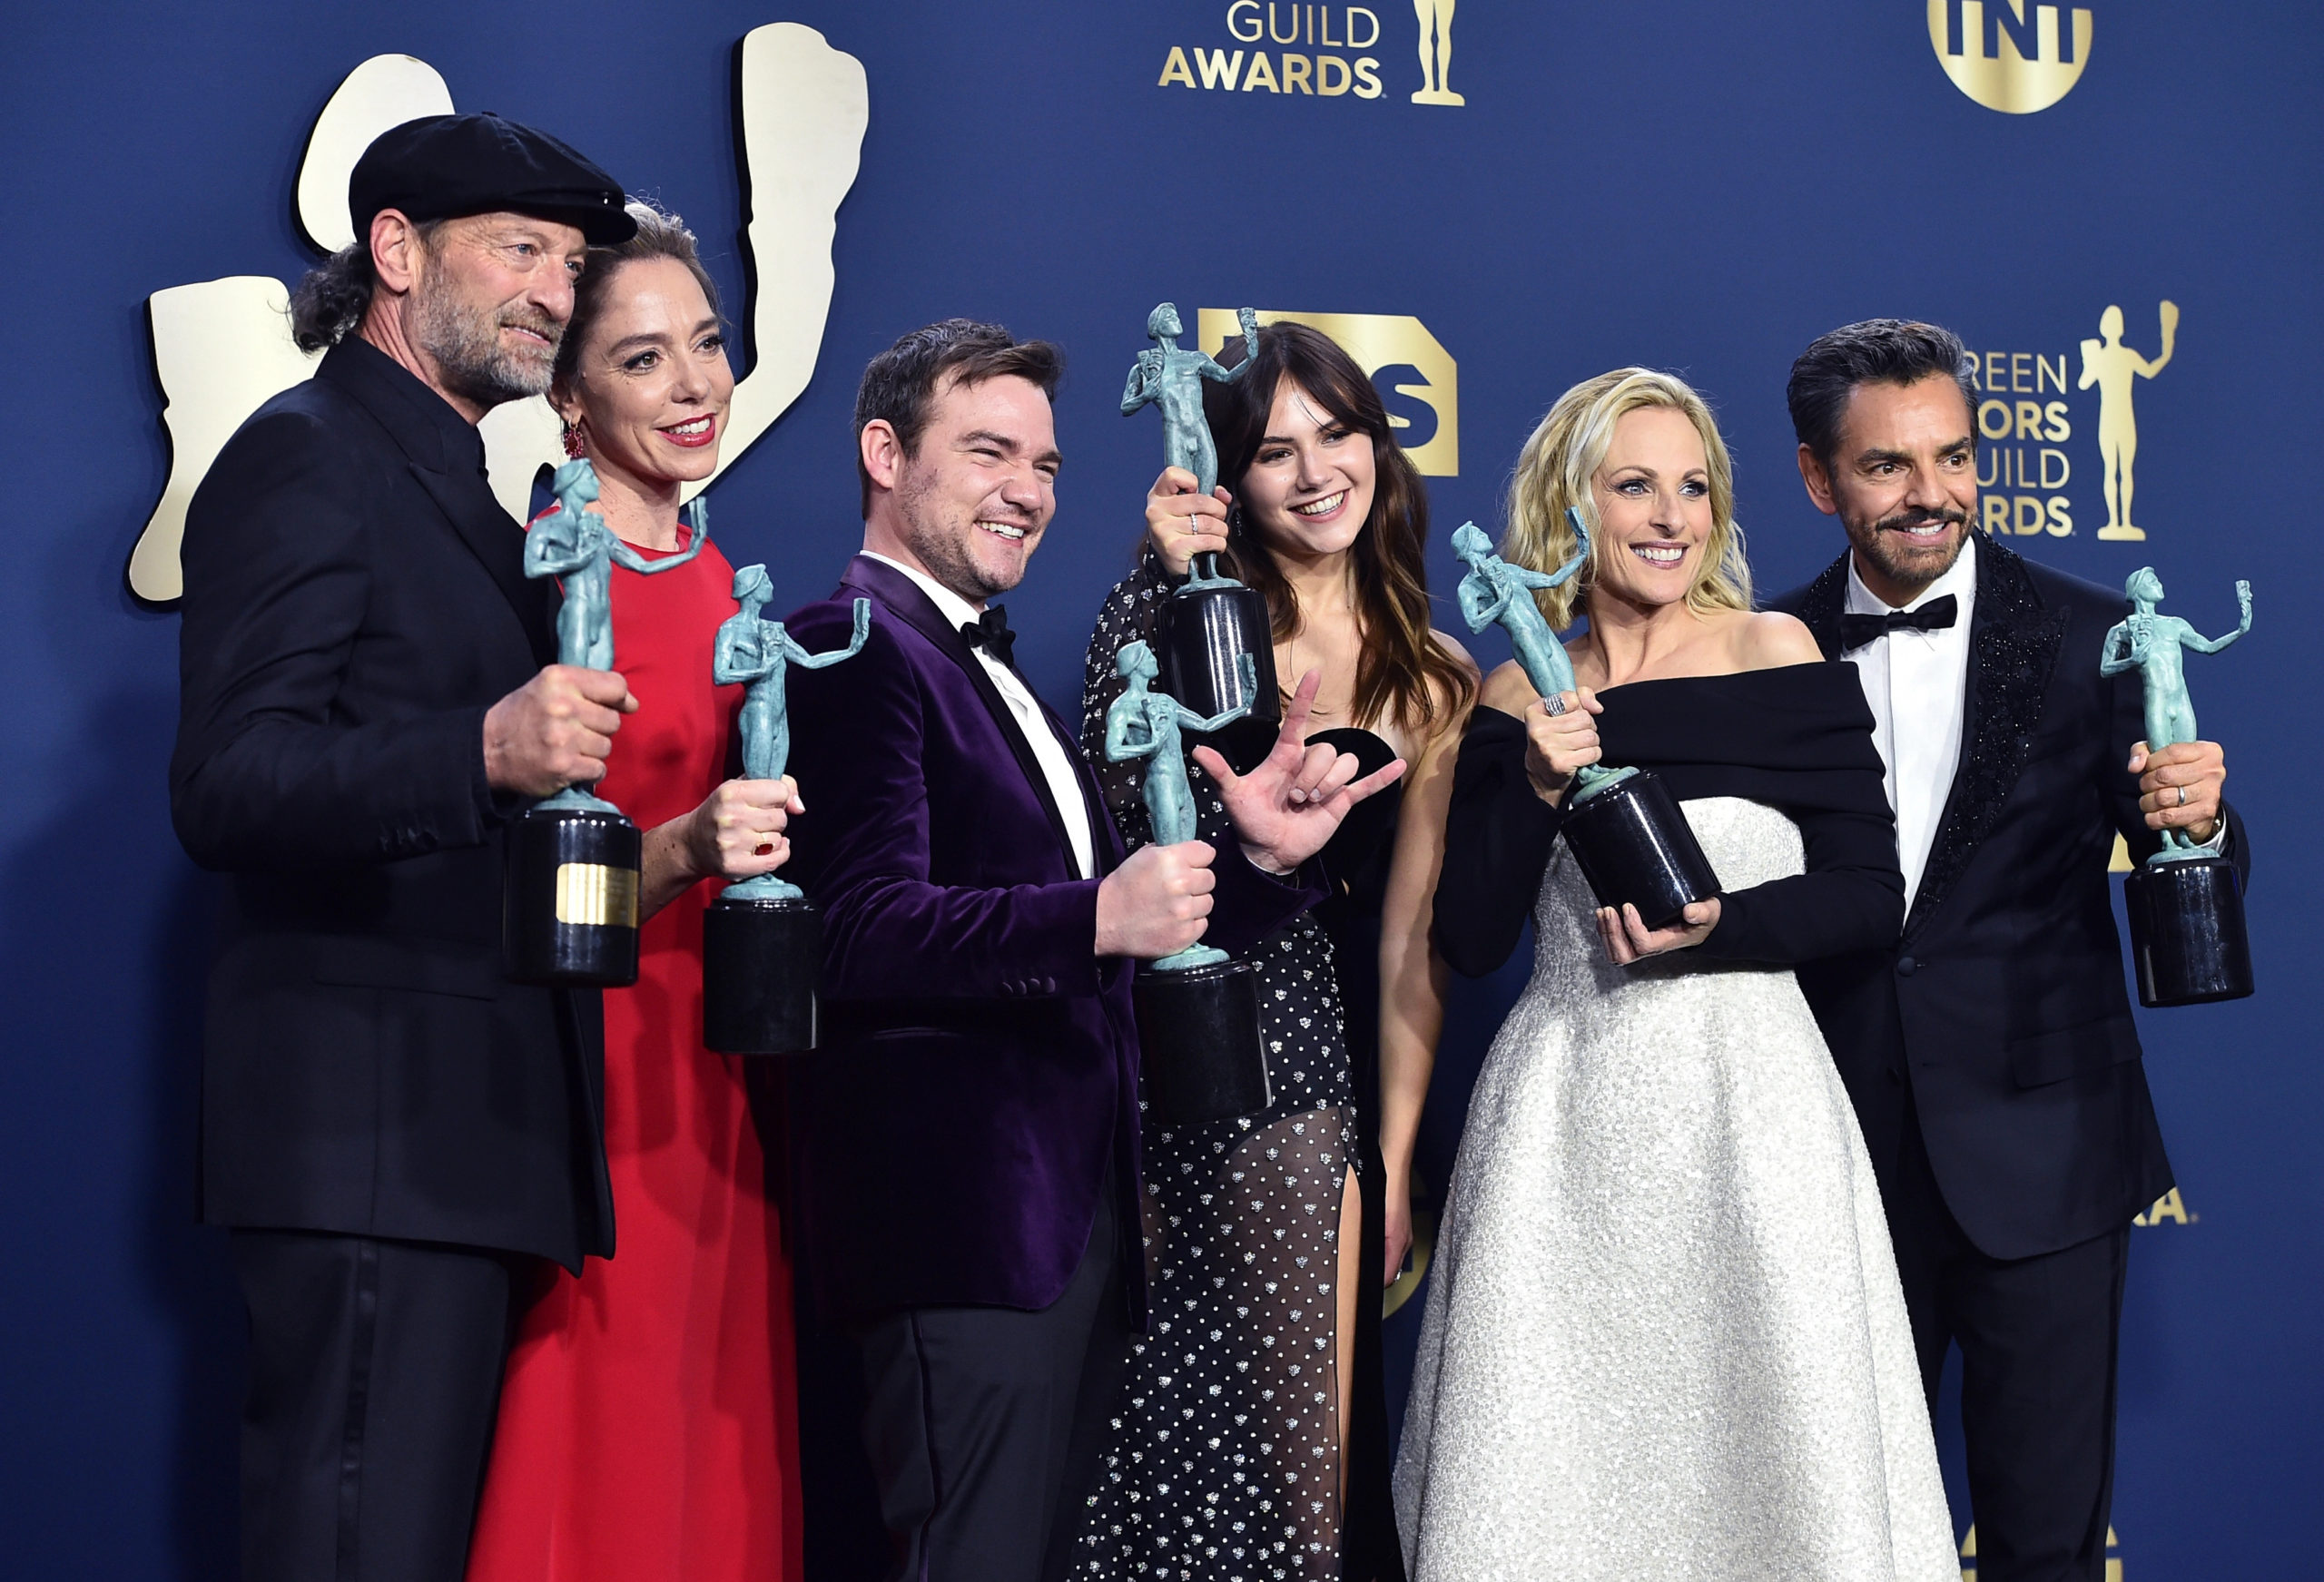 Foto do elenco do filme CODA no tapete vermelho do SAG Awards, com seus prêmios em mãos. Vemos 6 pessoas posando para uma fotografia, todos são pessoas brancas, e usam vestidos e ternos formais, segurando seus troféus e sorrindo.